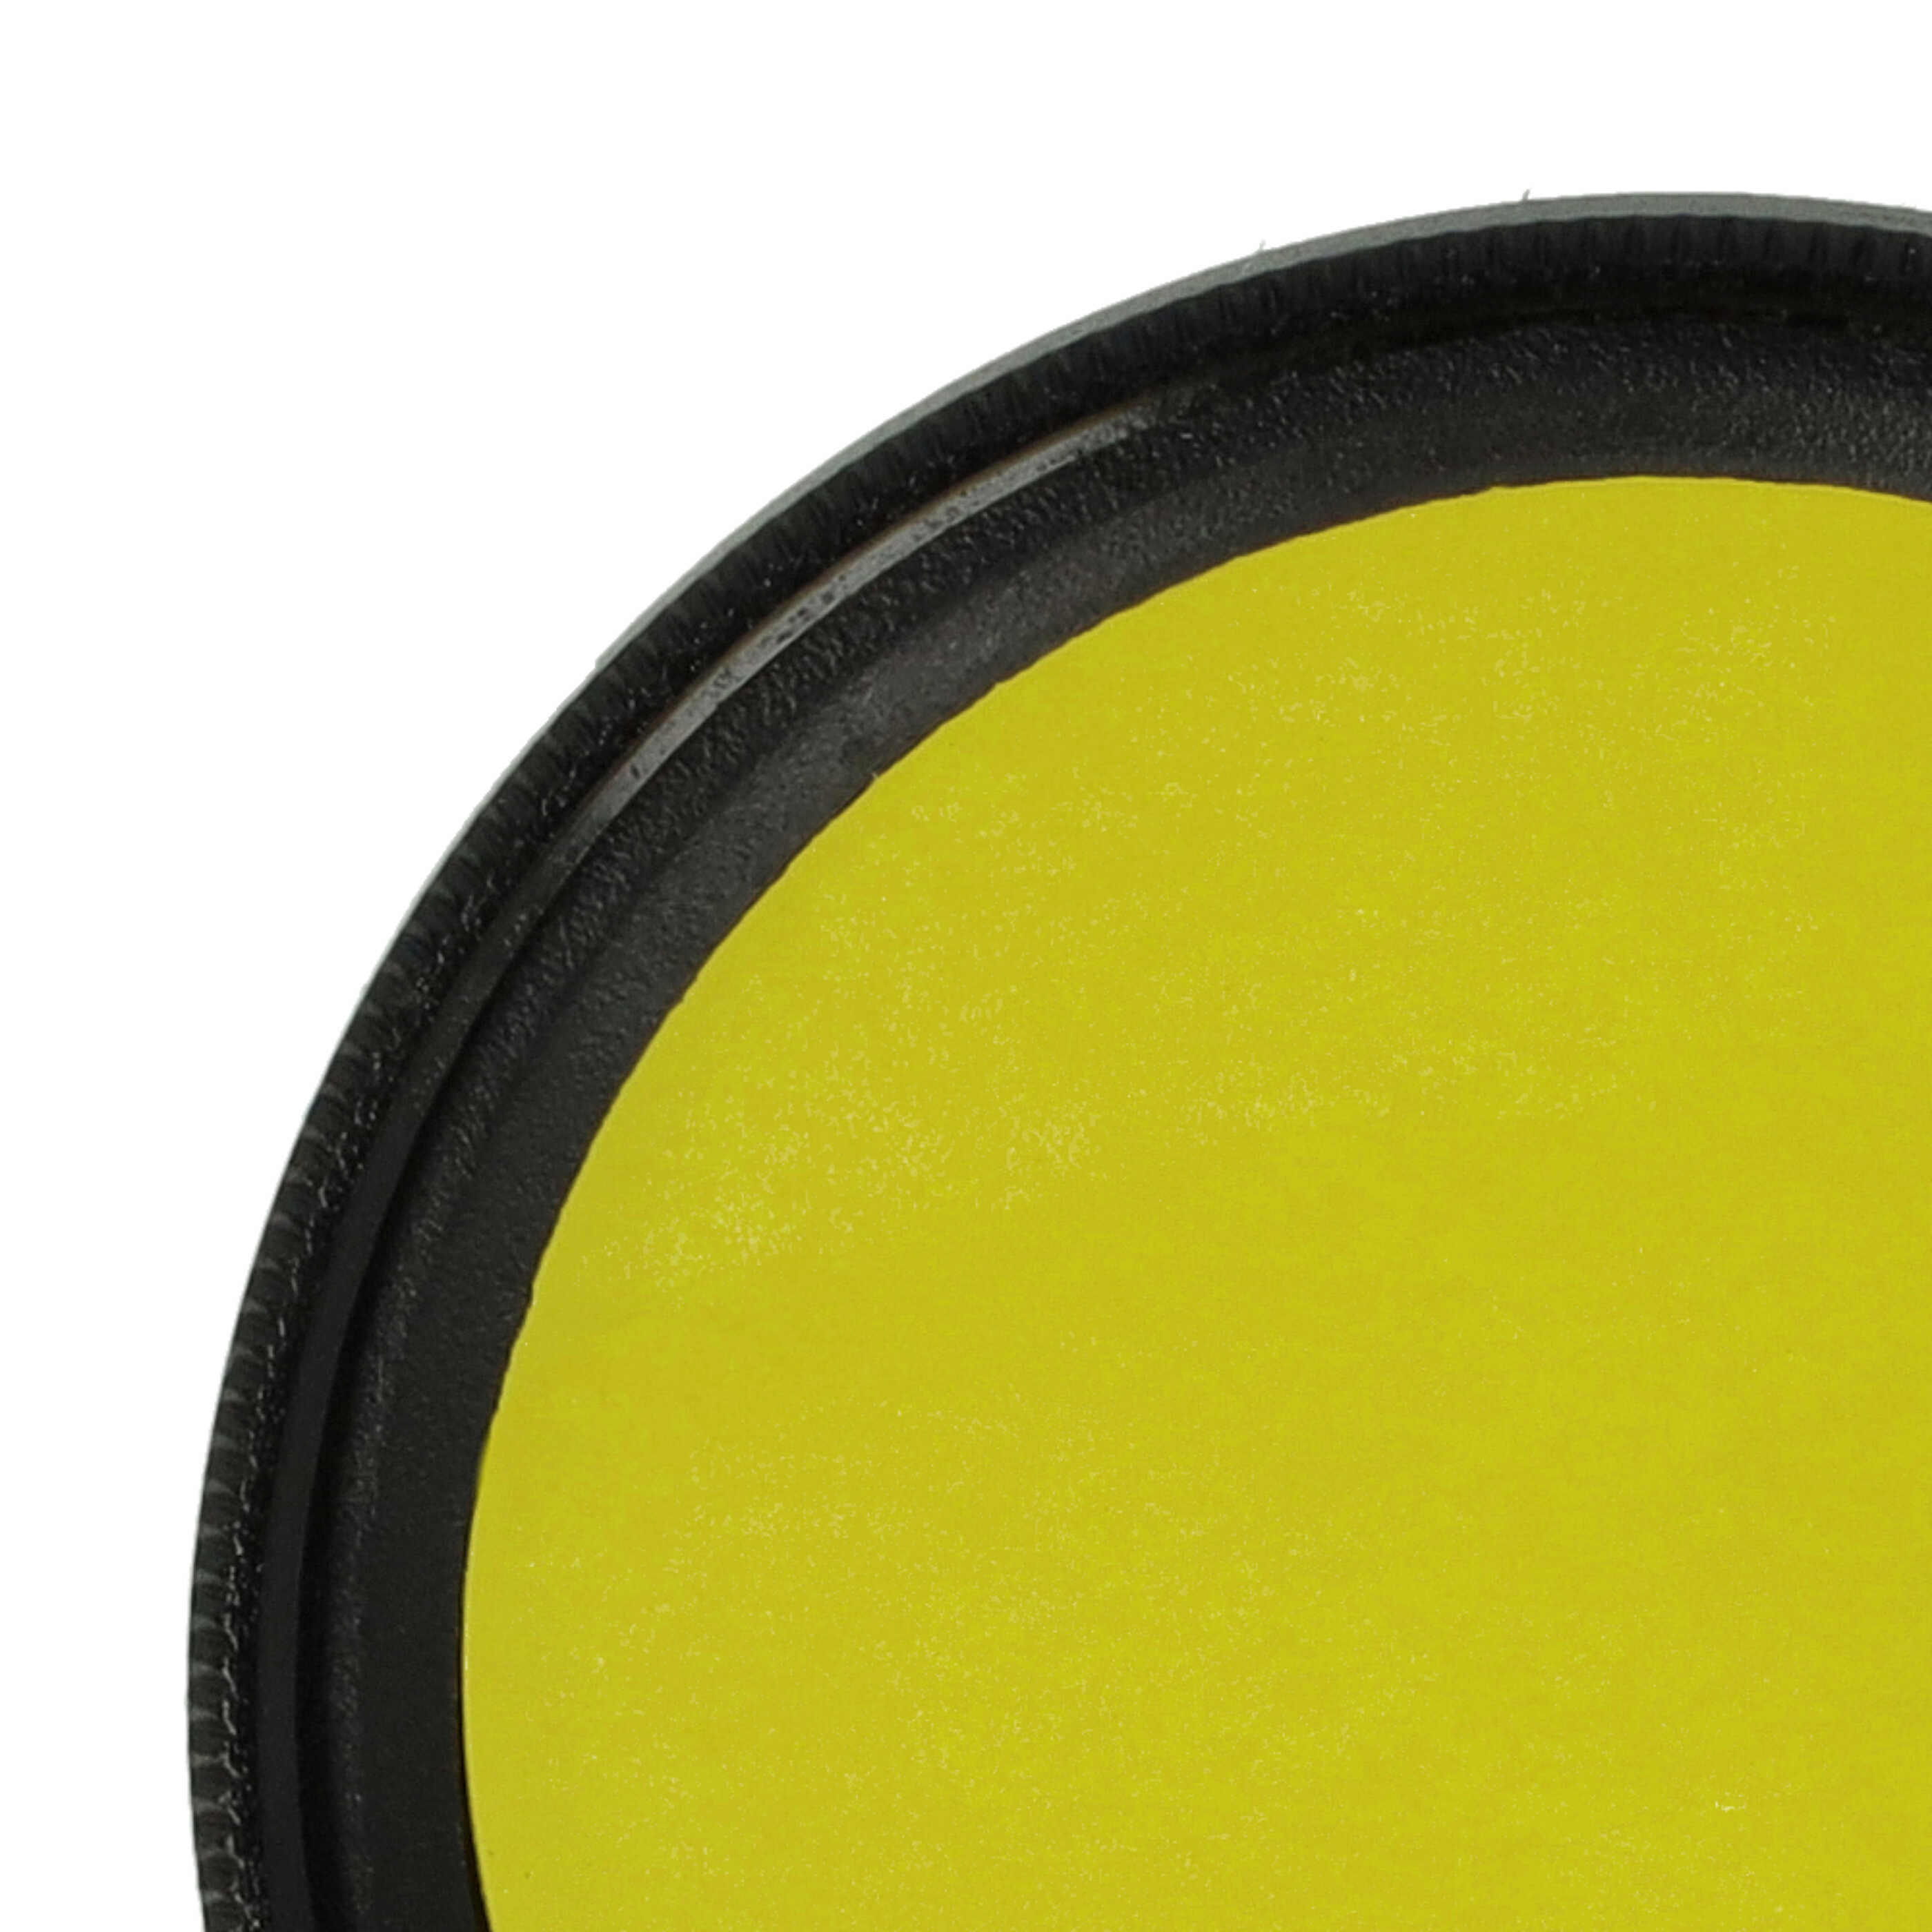 Filtro de color para objetivo de cámara con rosca de filtro de 37 mm - Filtro amarillo